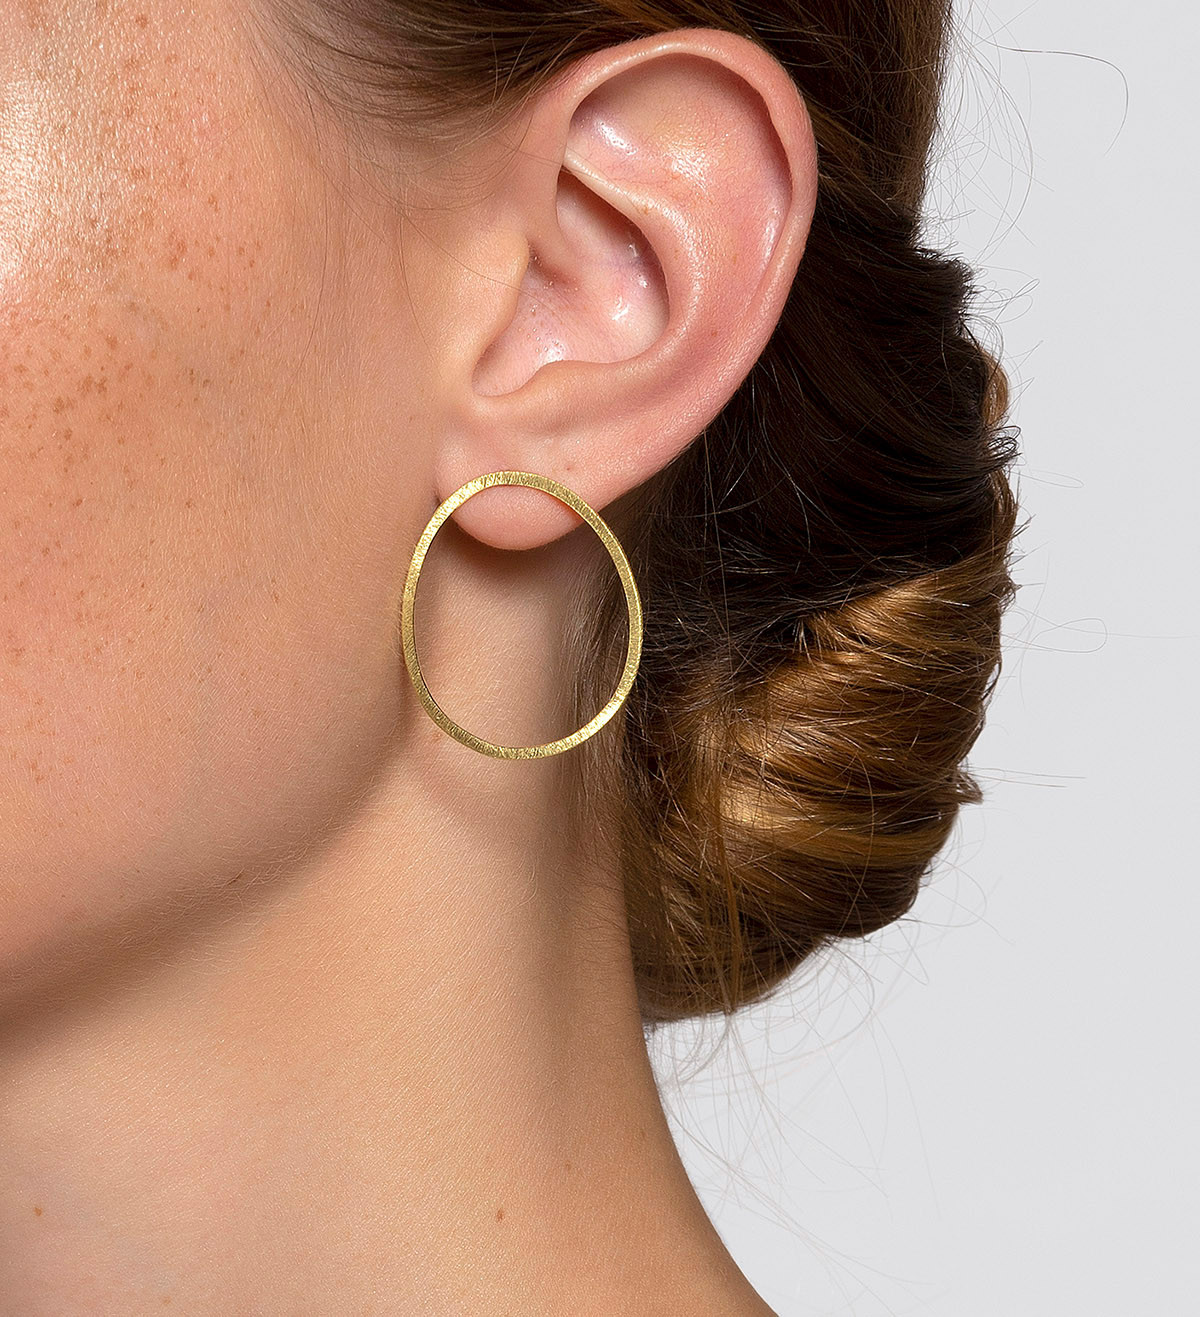 18k gold earrings Fil Pla 29mm